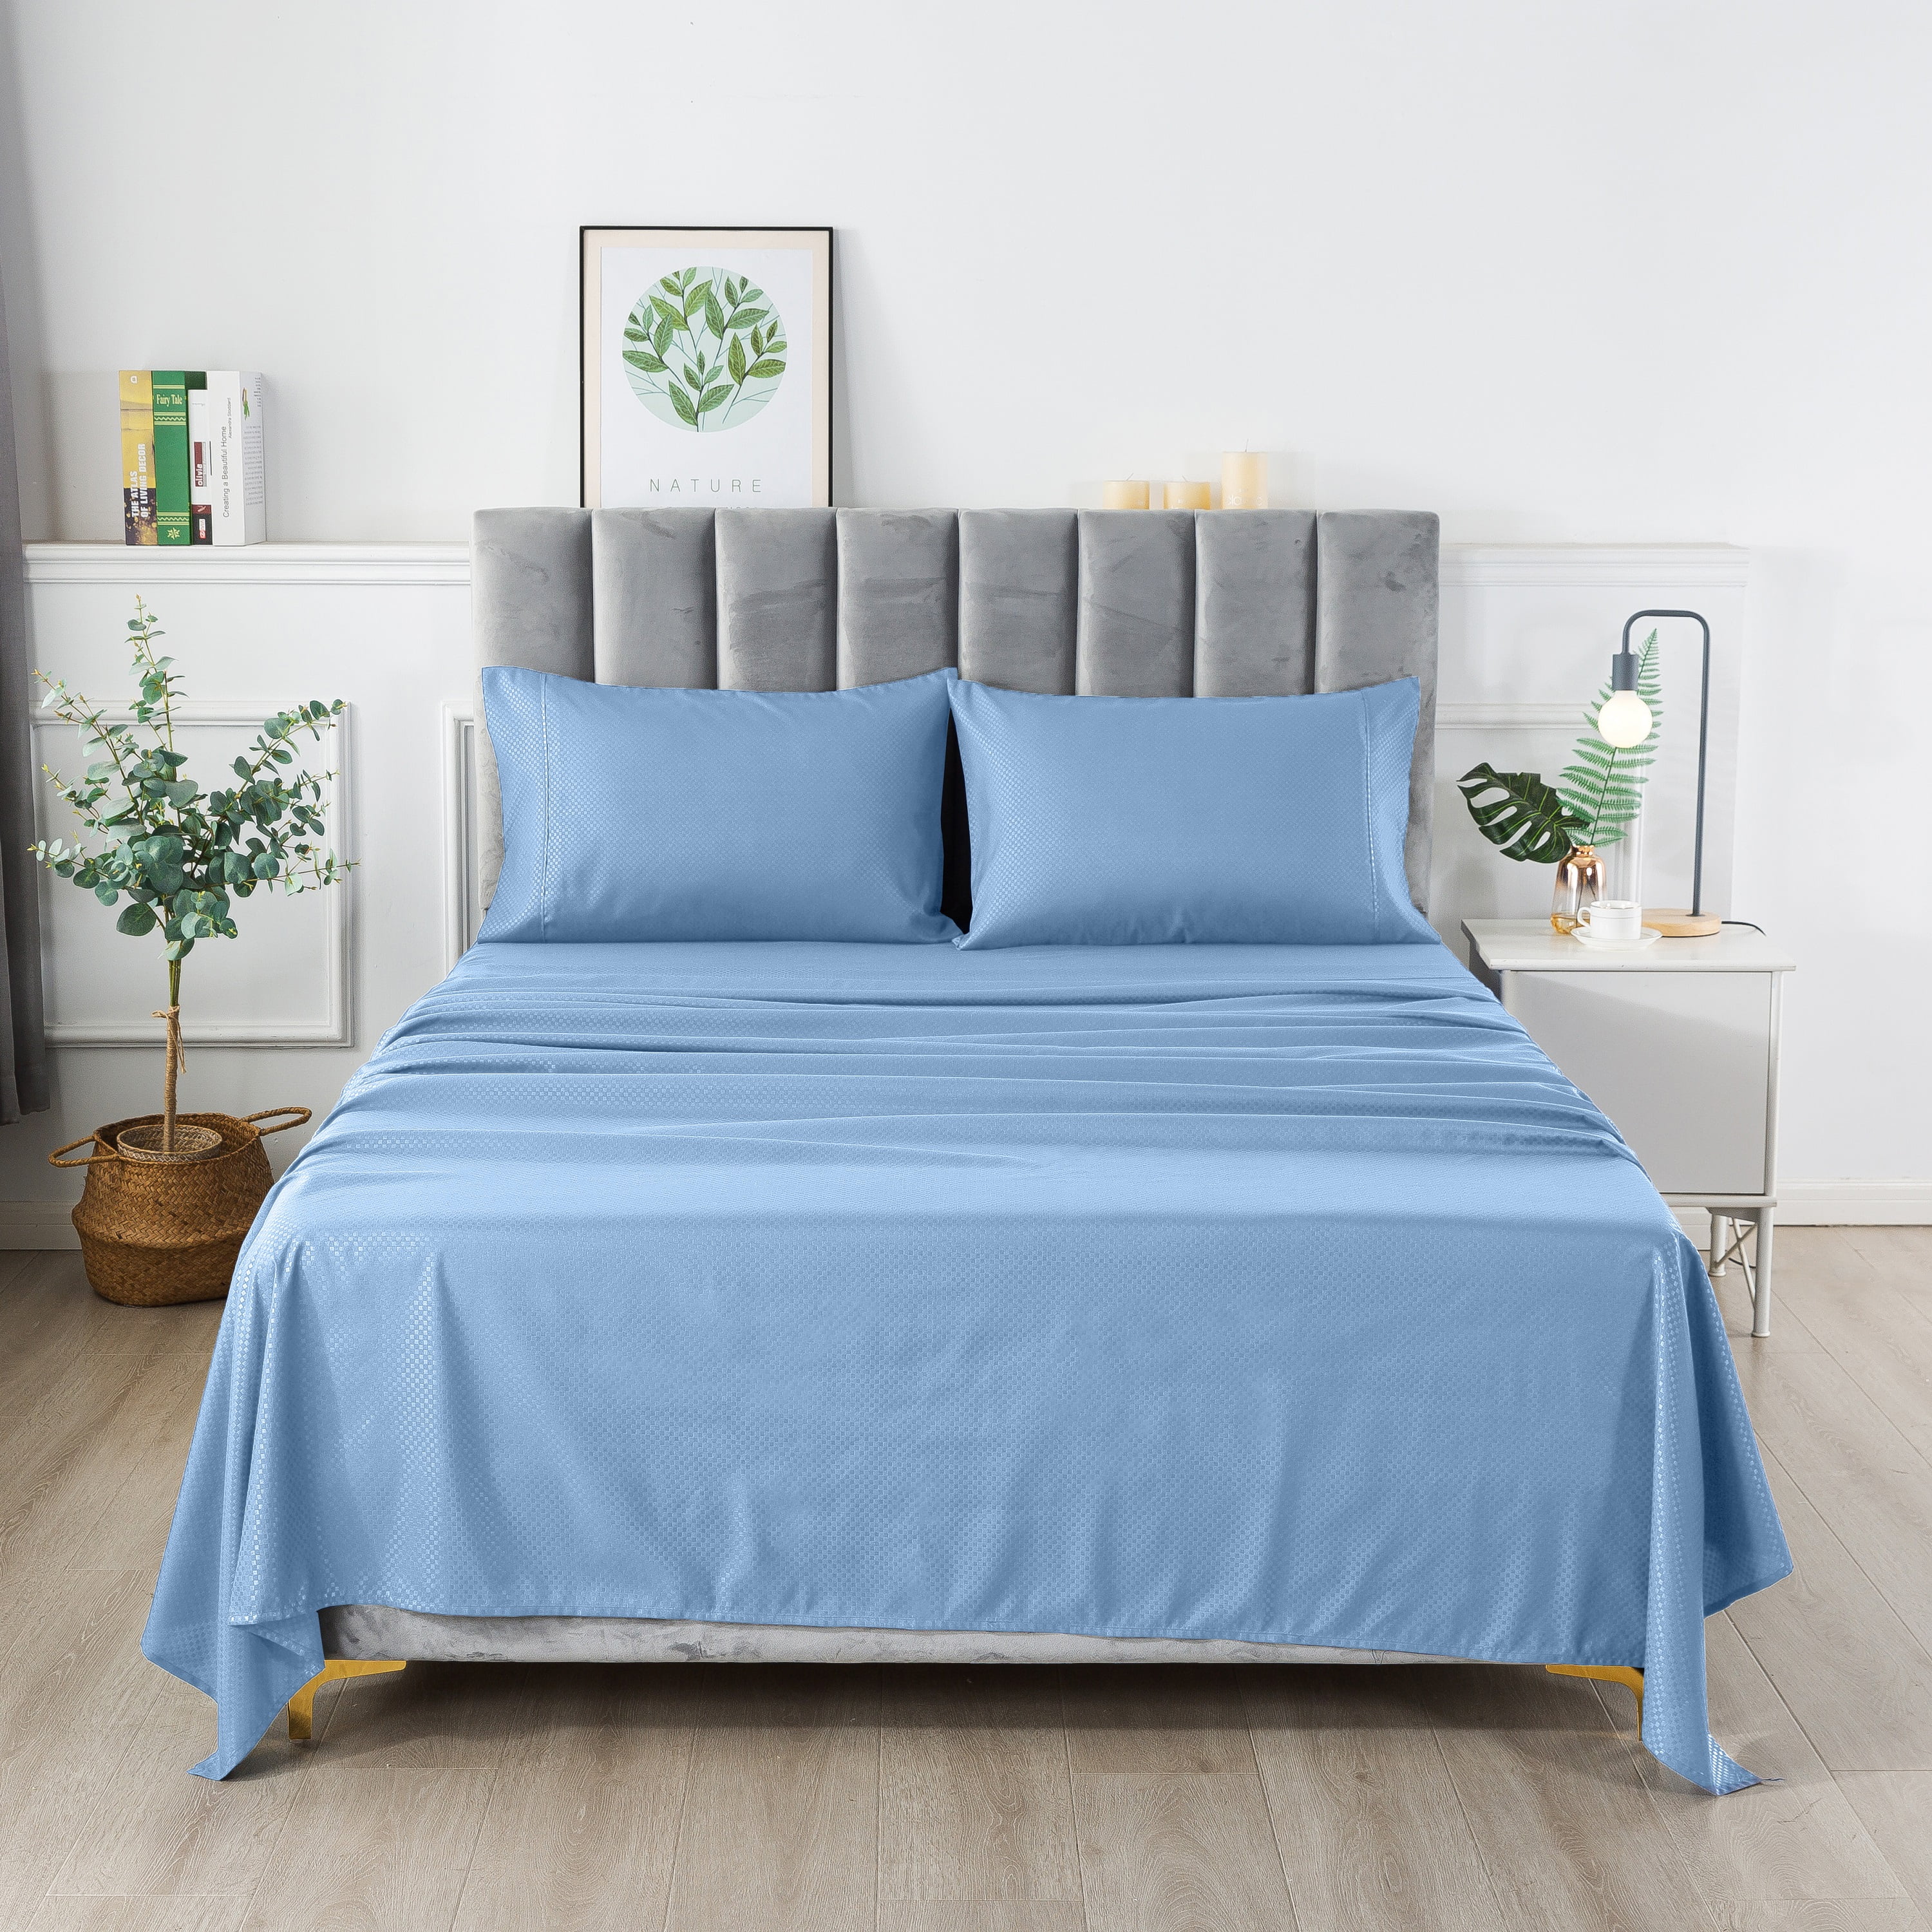 Details about   Premium 1000 TC Egyptian Cotton Bed Sheet Set 4 Piece Light Blue 